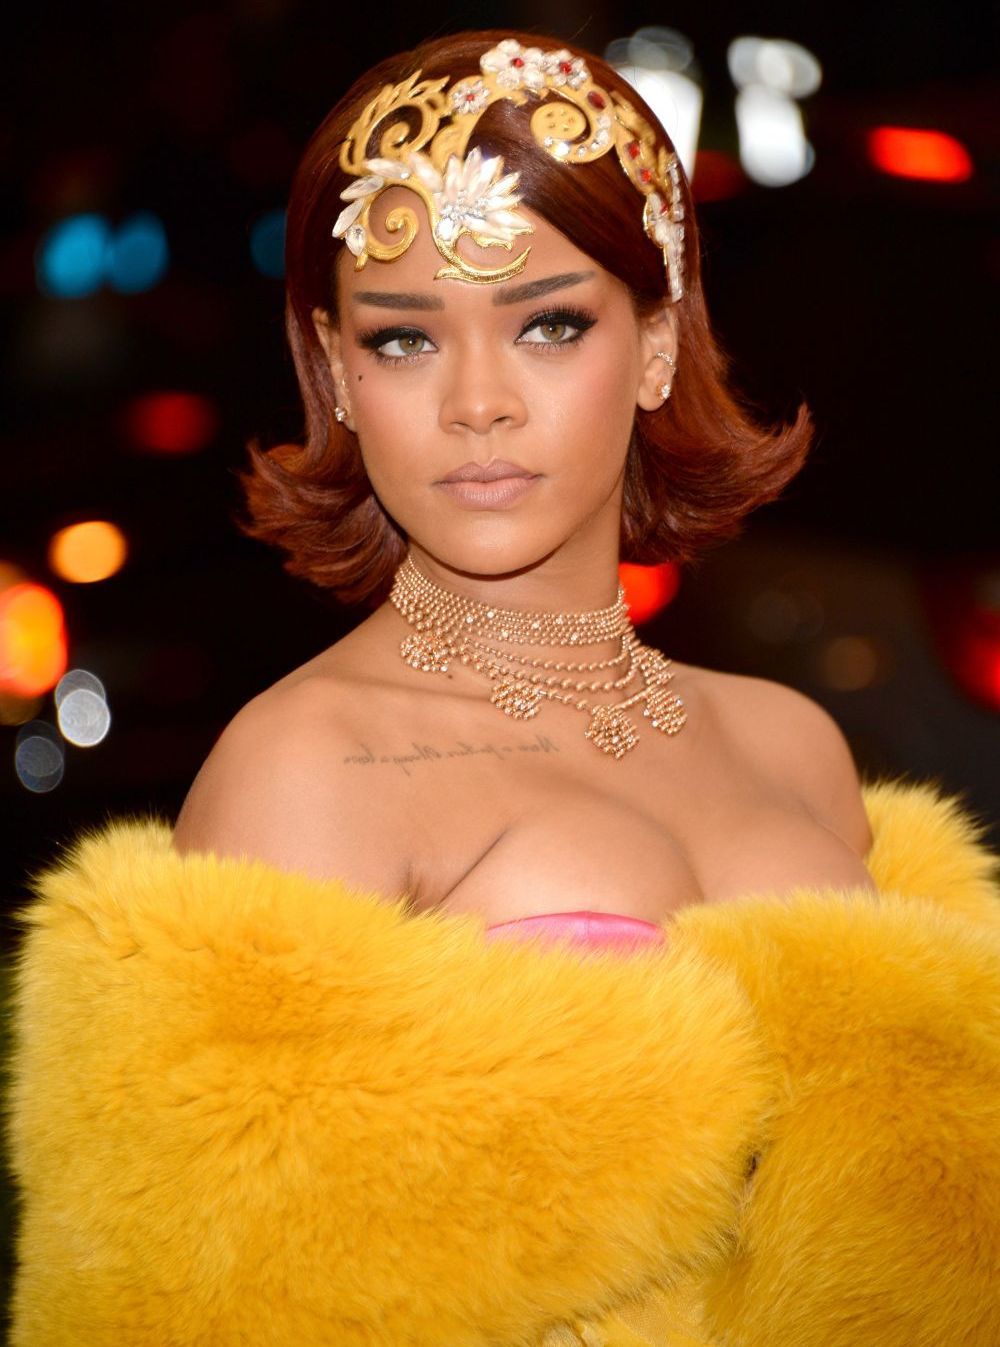 Trebuie sa vezi cu ce este incaltata! Rihanna face ravagii pe internet cu sandalele spectaculoase pe care le poarta